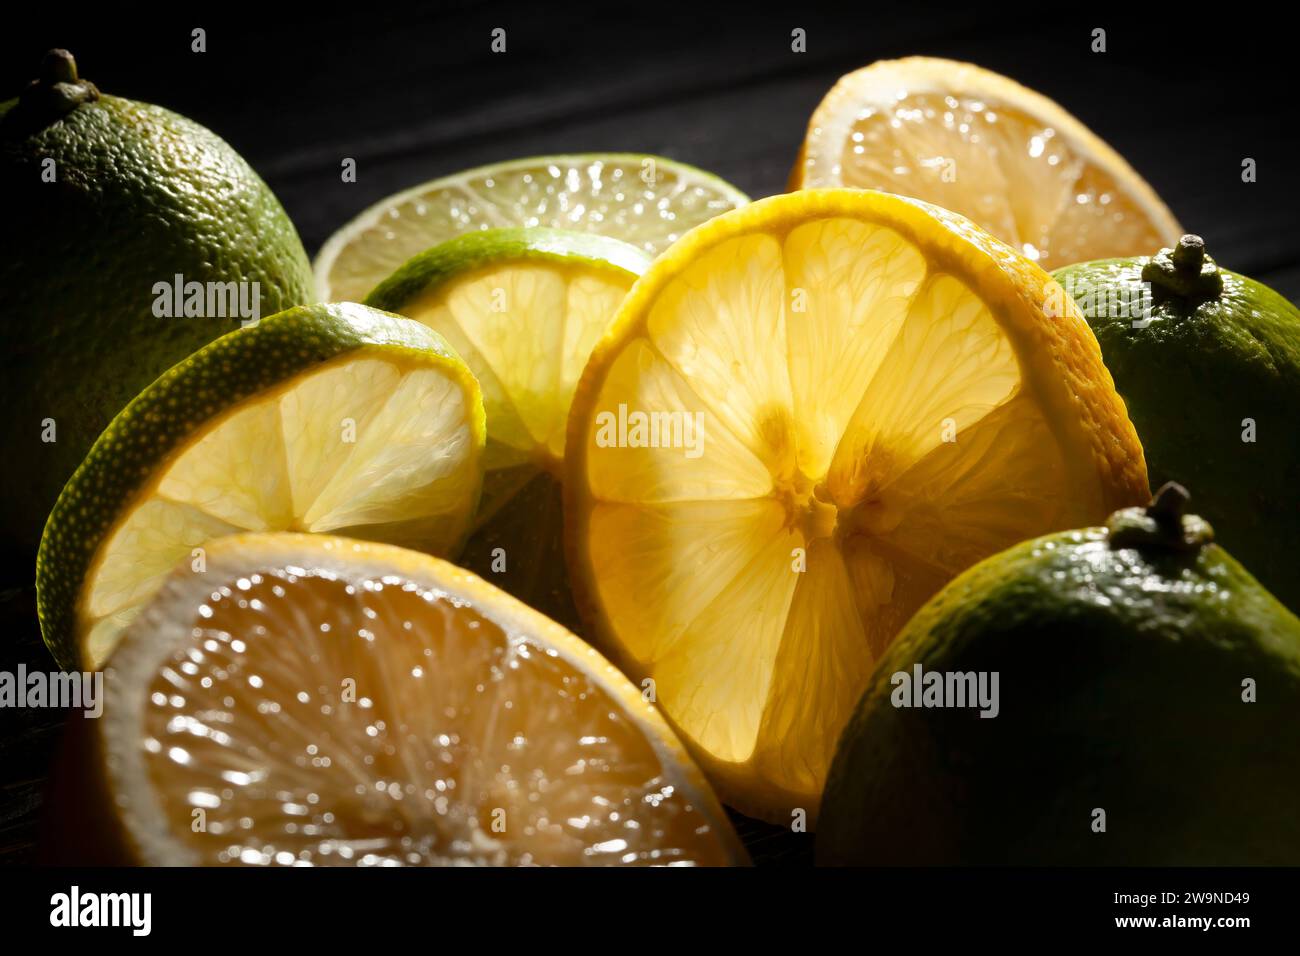 limes de citron tranchées se mélangent sur fond noir Banque D'Images